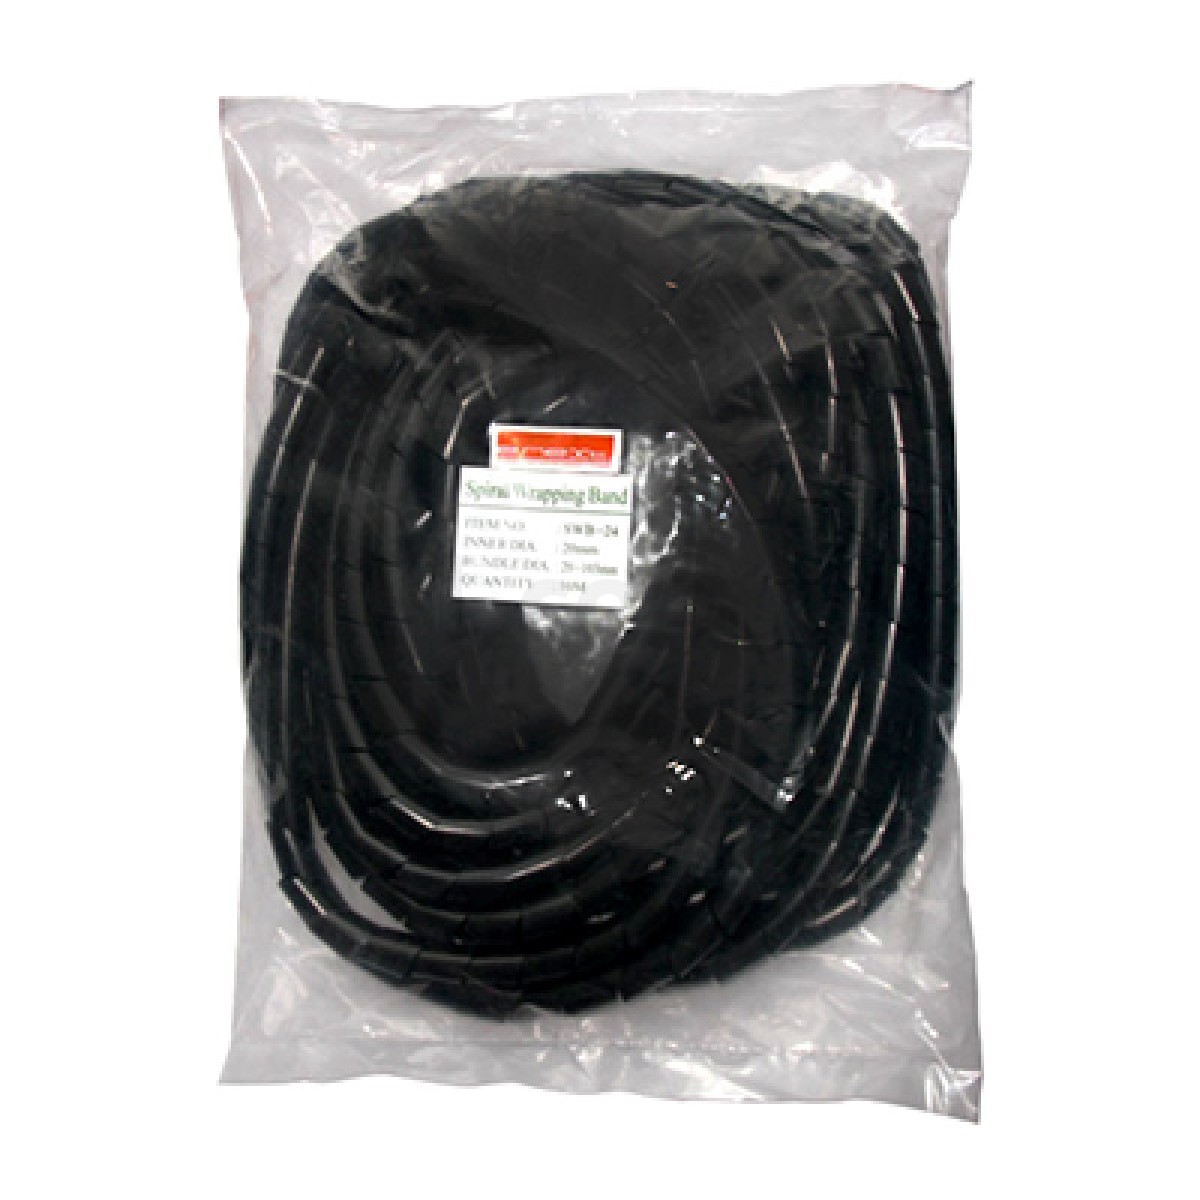 Спиральная обвязка для провода ∅1,5-10 мм e.spiral.stand.3.black (10 м) черная, E.NEXT 256_256.jpg